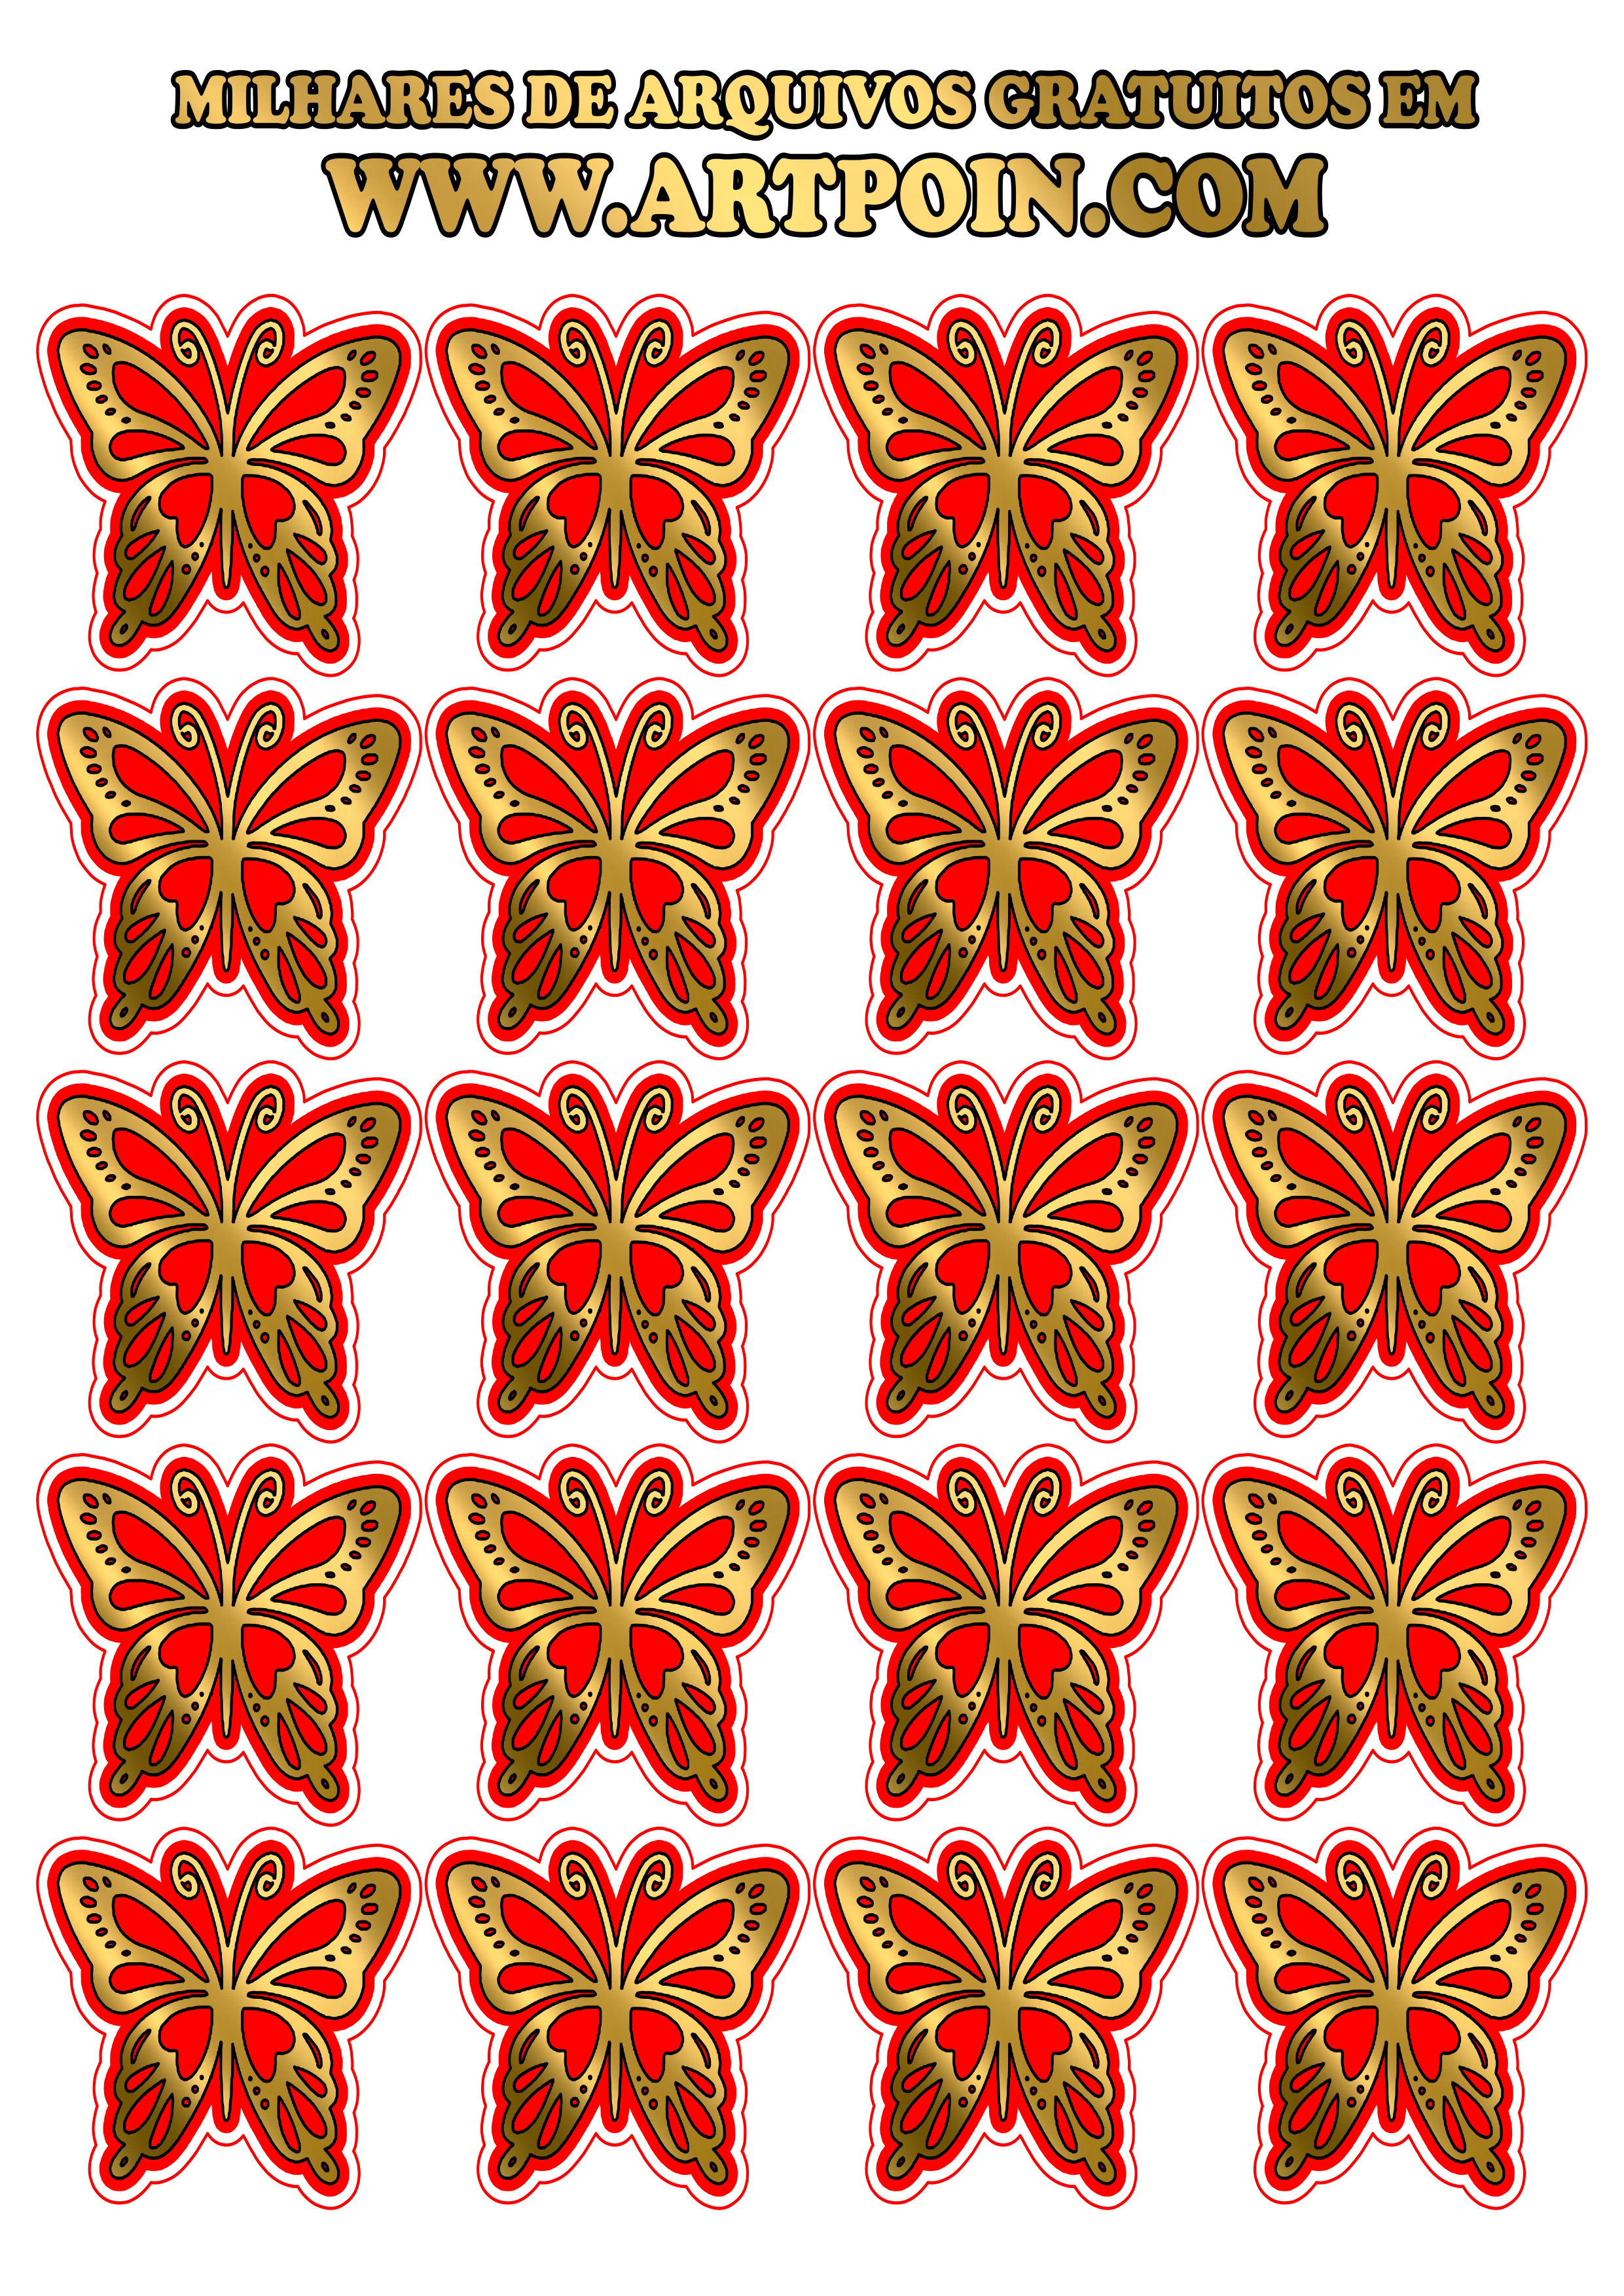 borboleta-dourada-com-vermelho1